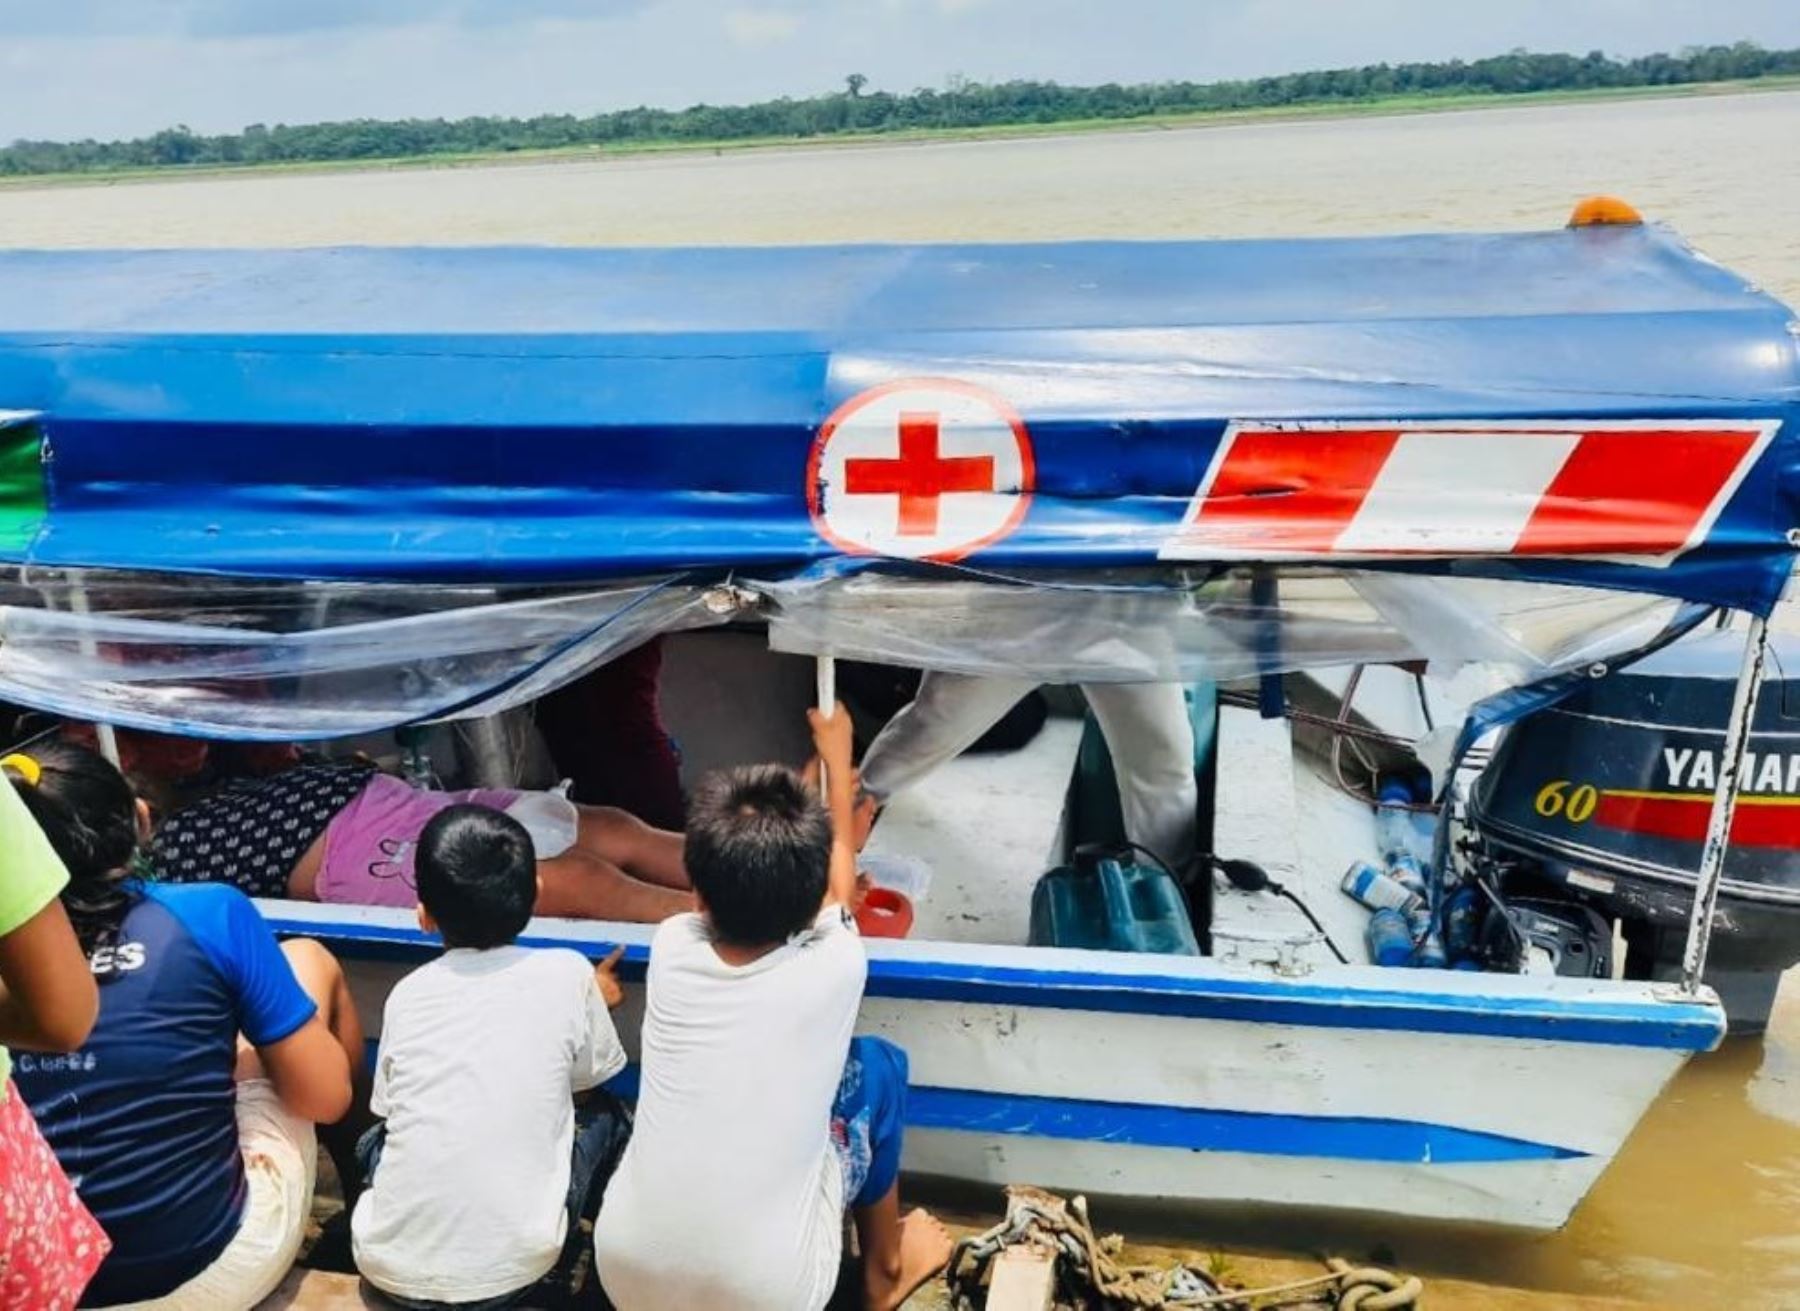 En una chalupa (embarcación fluvial), especialmente acondicionada y mejorada, fueron trasladados los pacientes de la comunidad Kukama Kukamiria al Hospital de Iquitos.